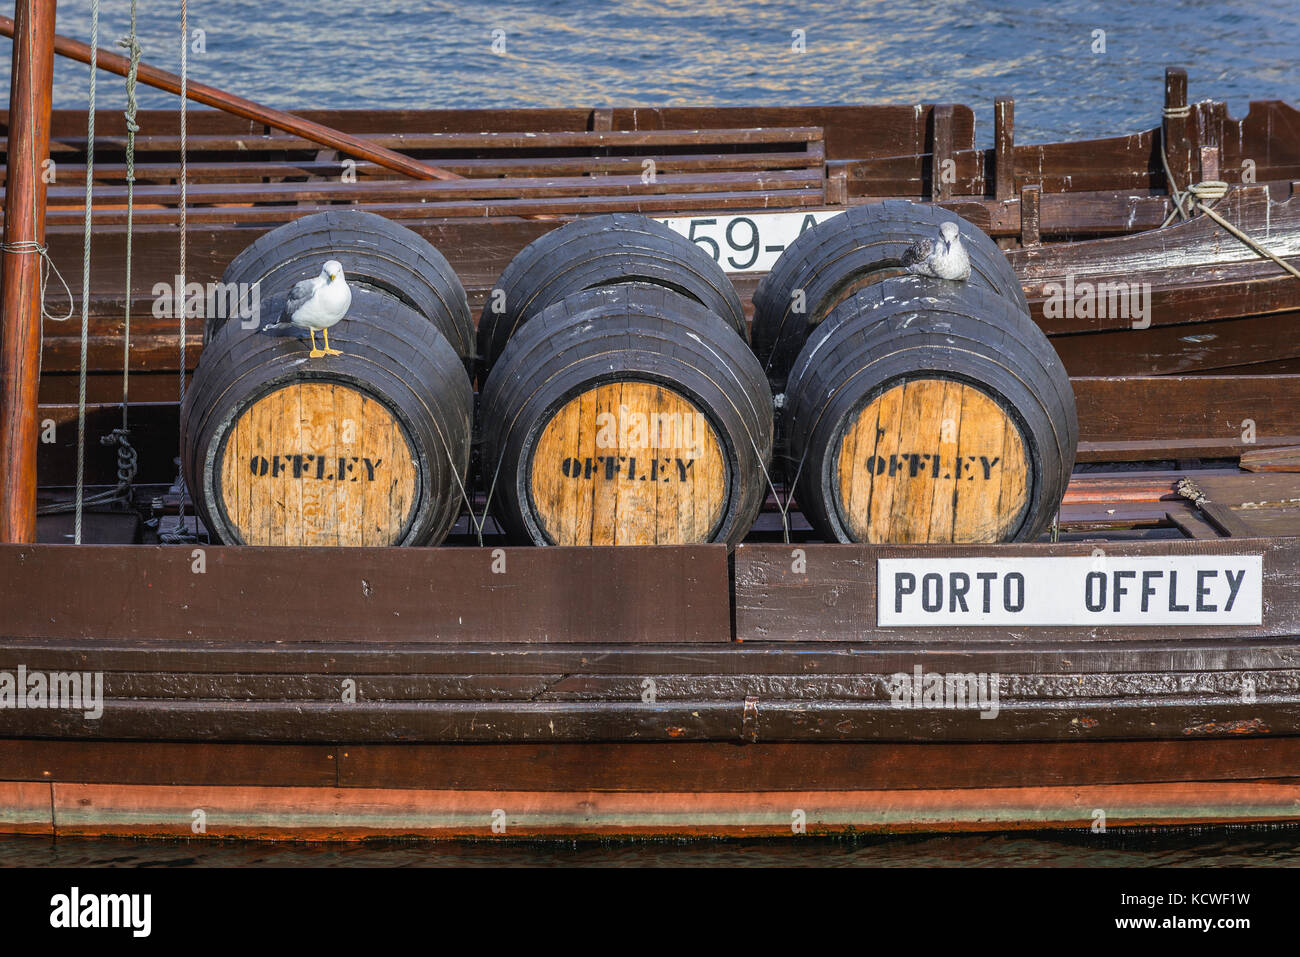 Botti su un porto di Offley barche da vino chiamato Rabelo Boats su un fiume Douro nella città di Vila Nova de Gaia. Porto città fiume banca sullo sfondo Foto Stock